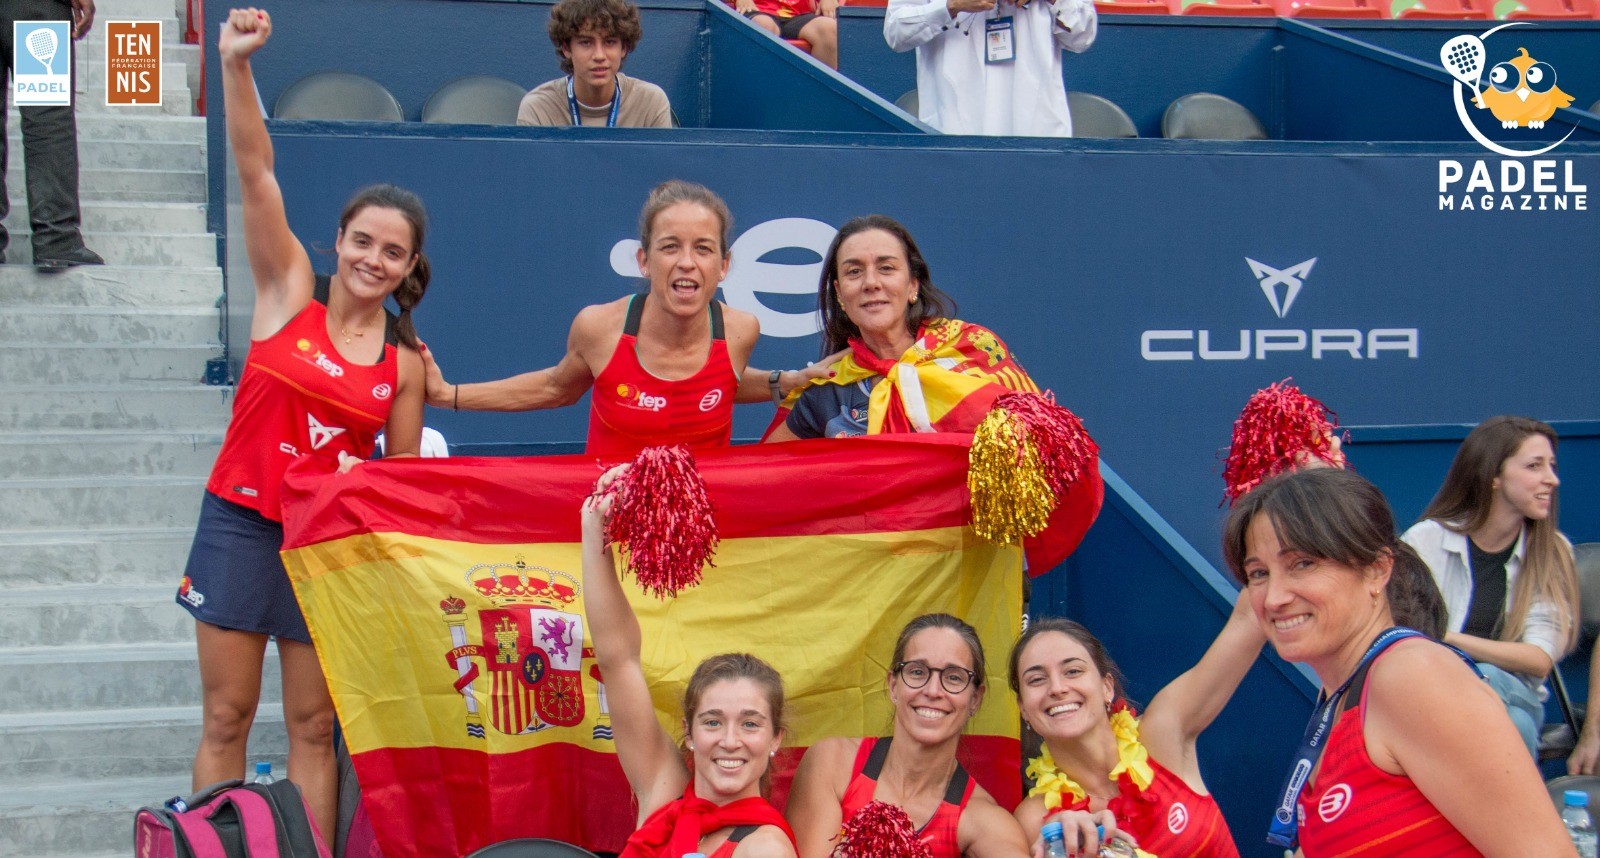 Le padel „Jedz” tenisa w Hiszpanii